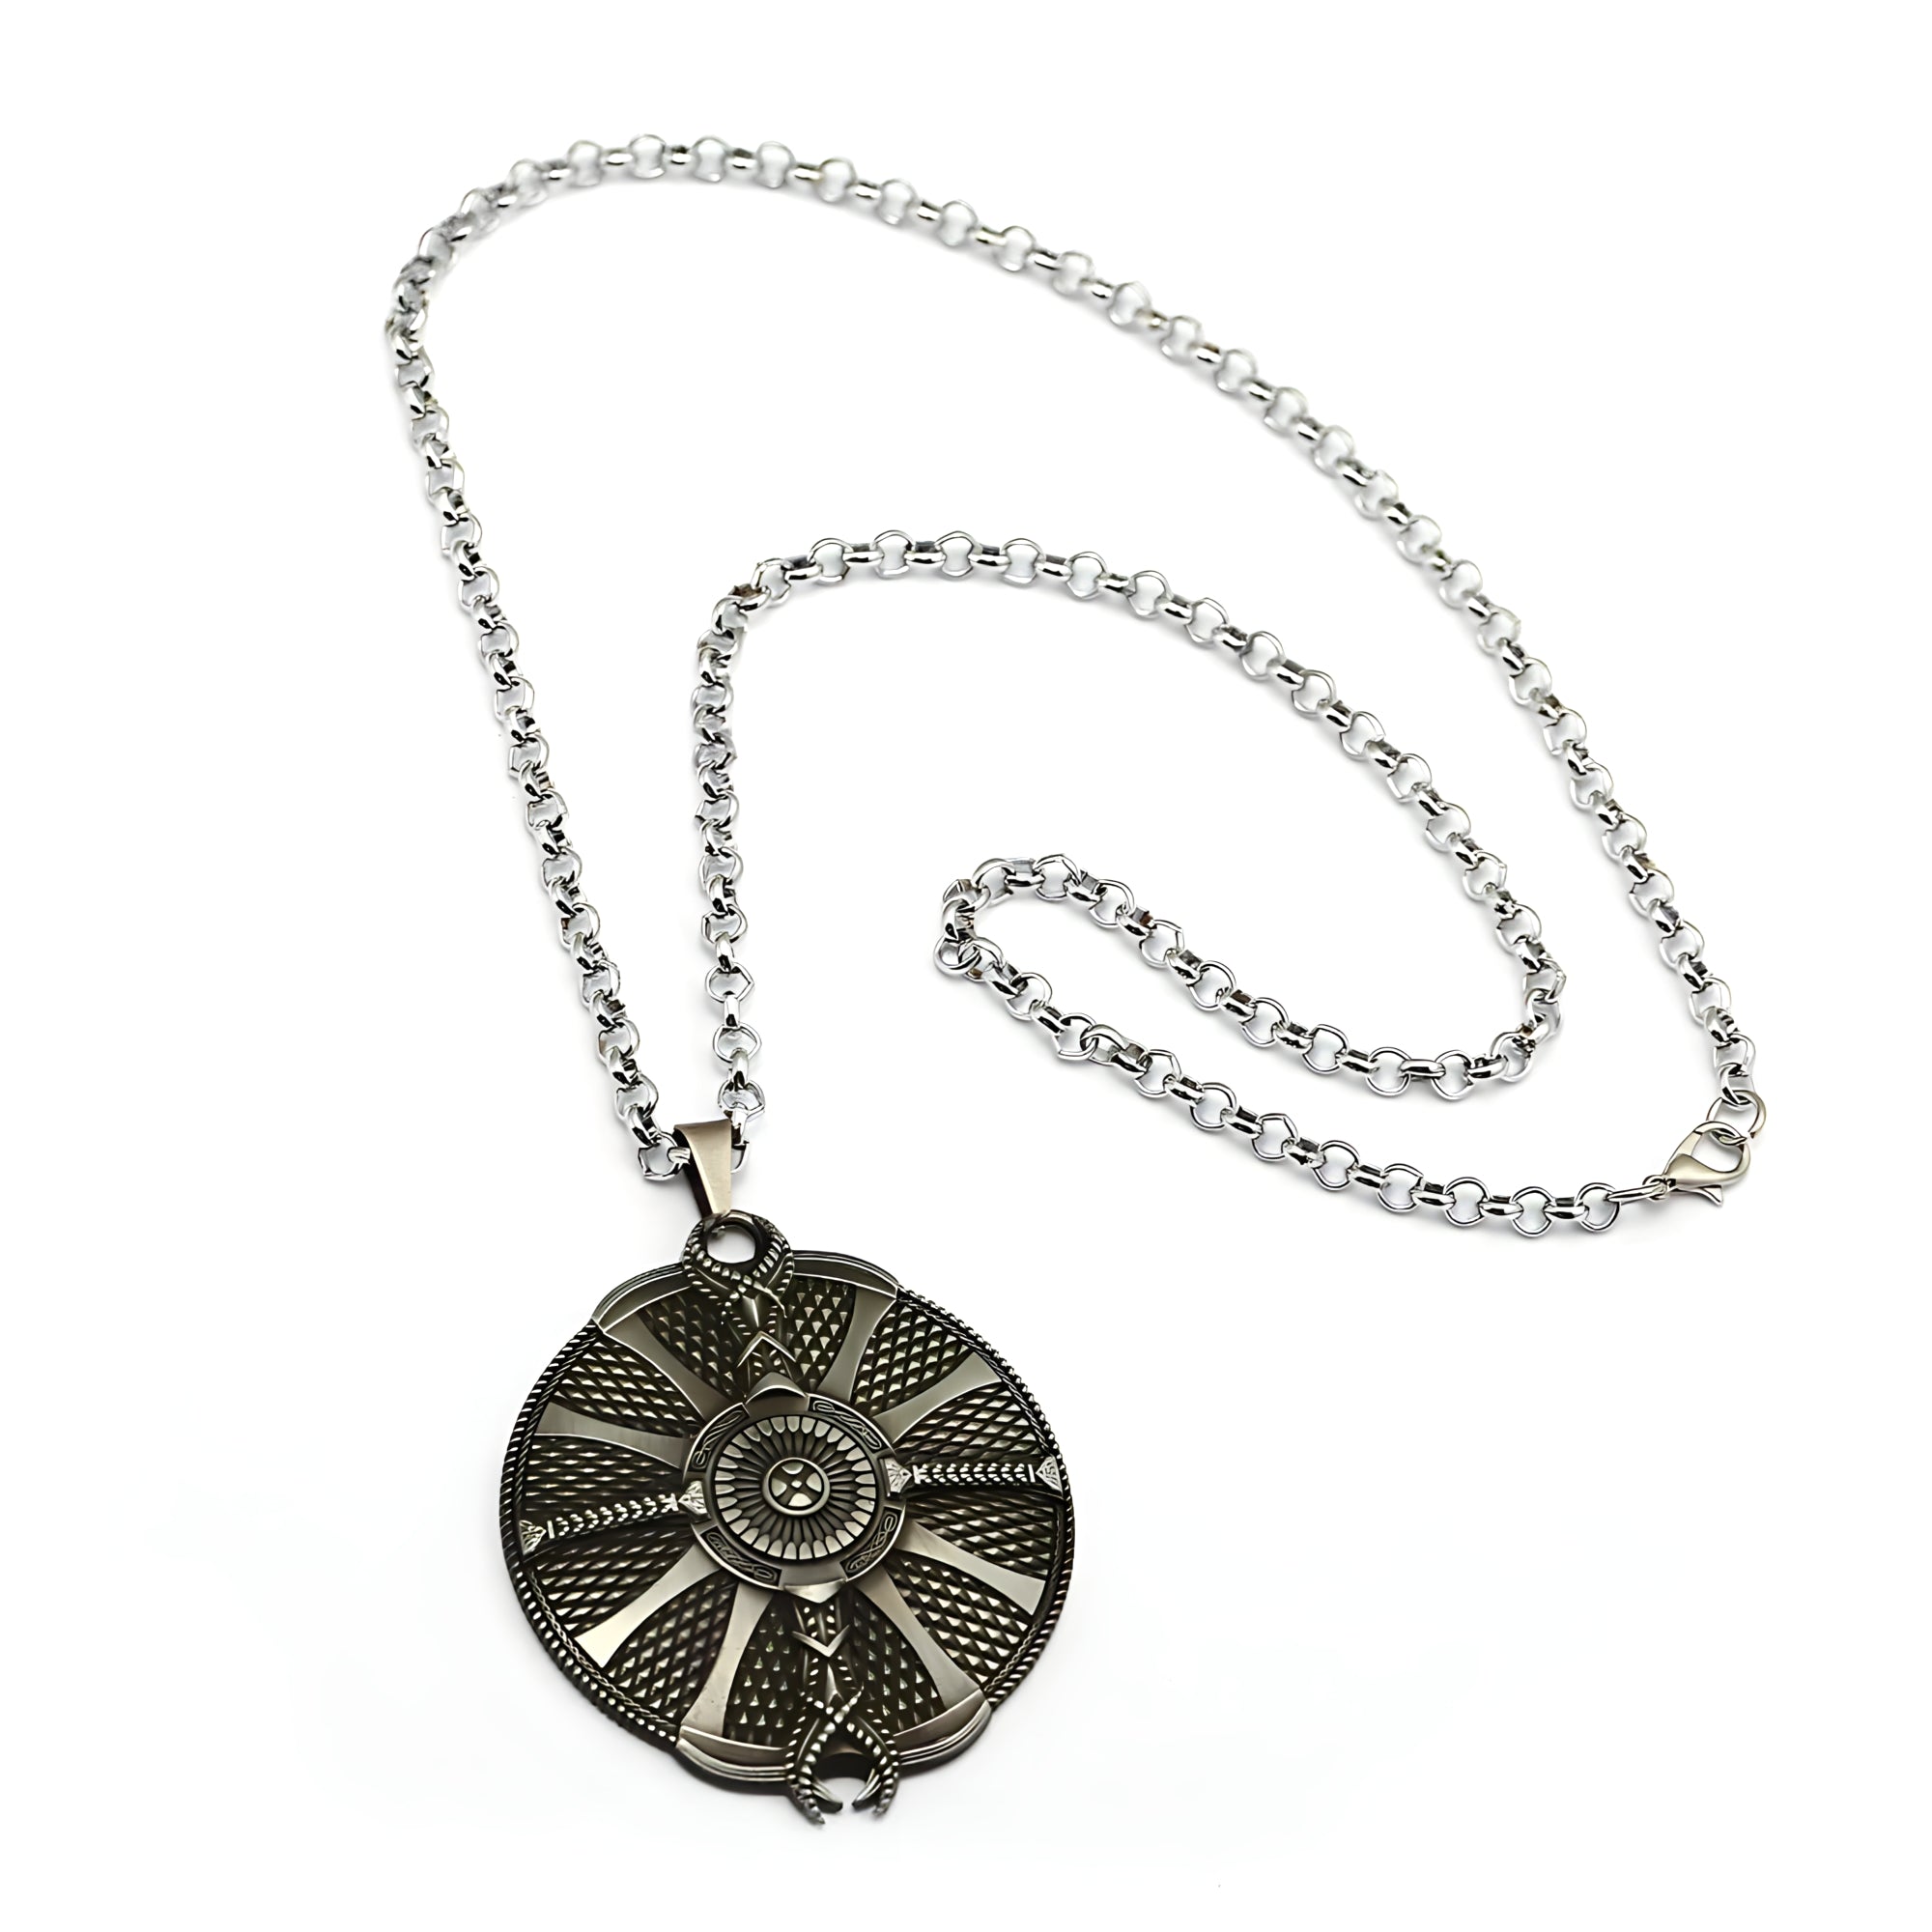 Kratos Shield Necklace